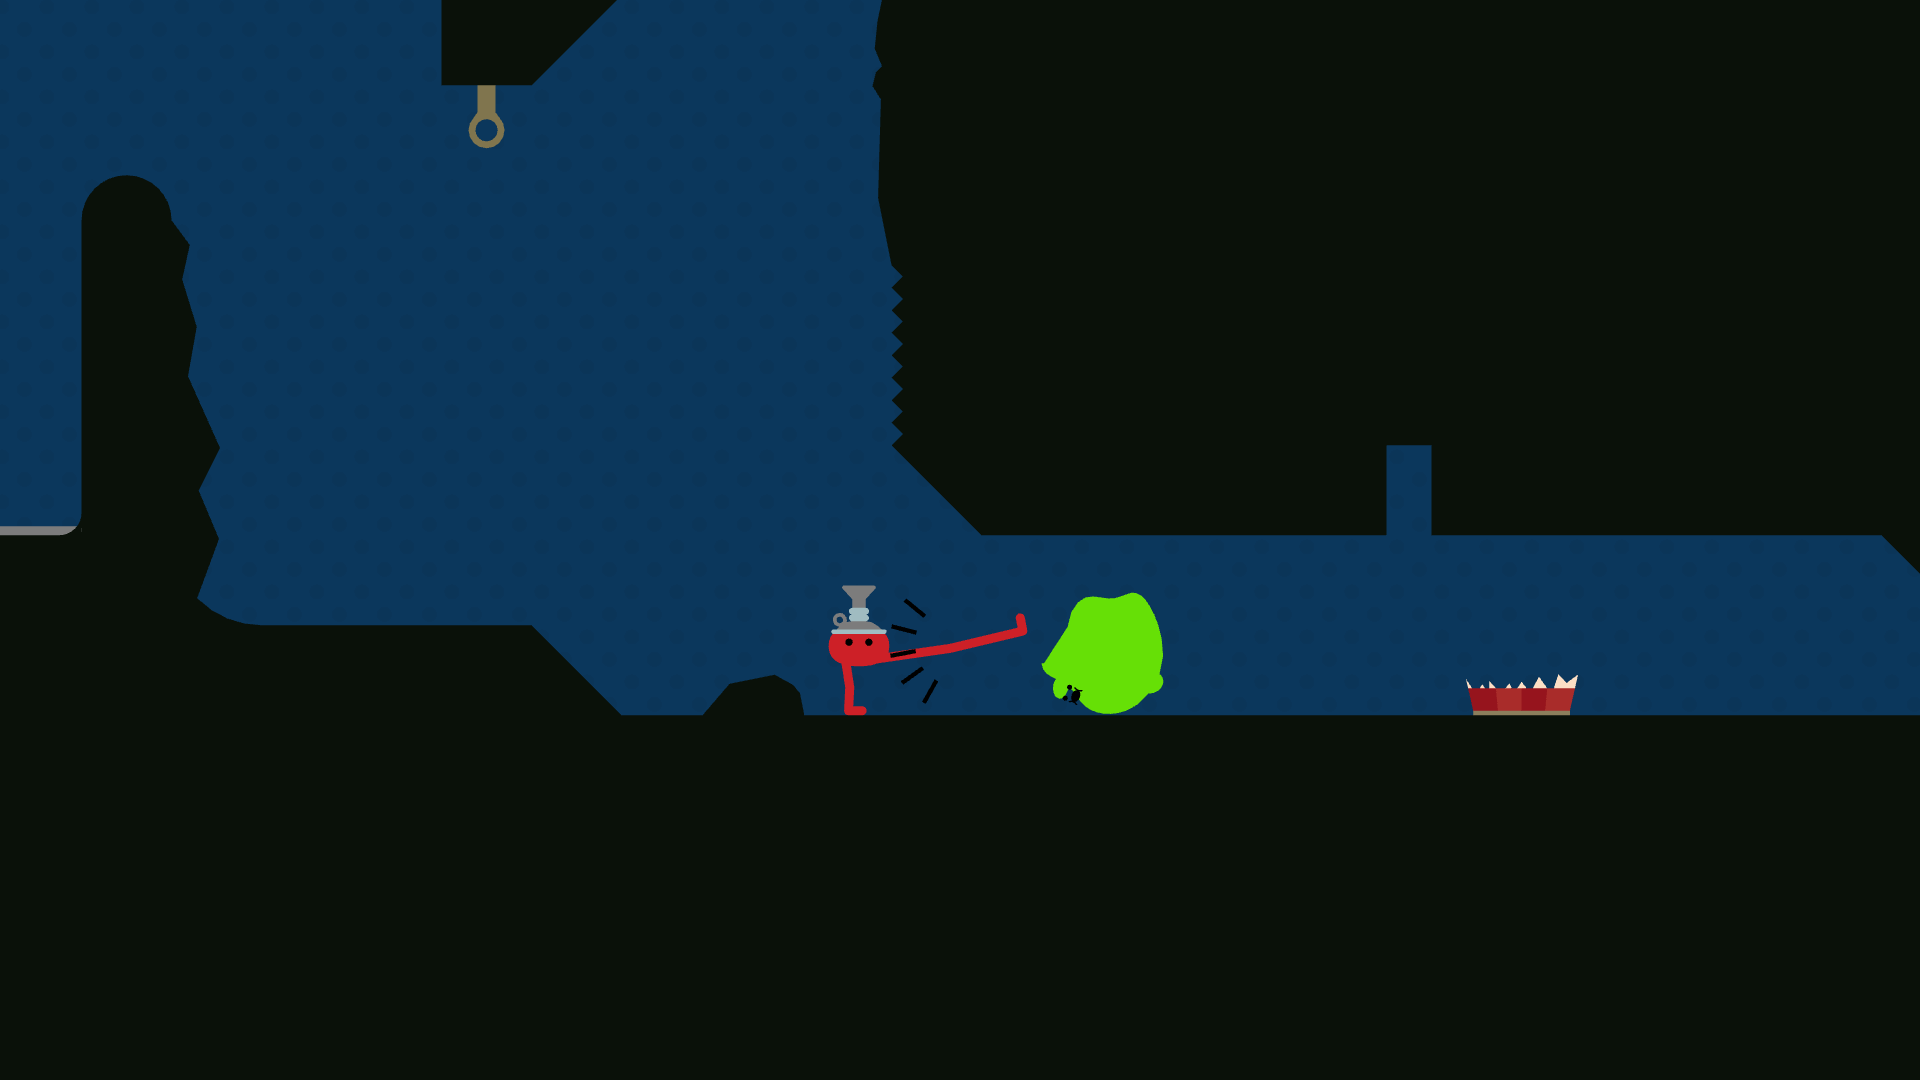 Pikuniku - A red character with a weird hat kicks a green blob around